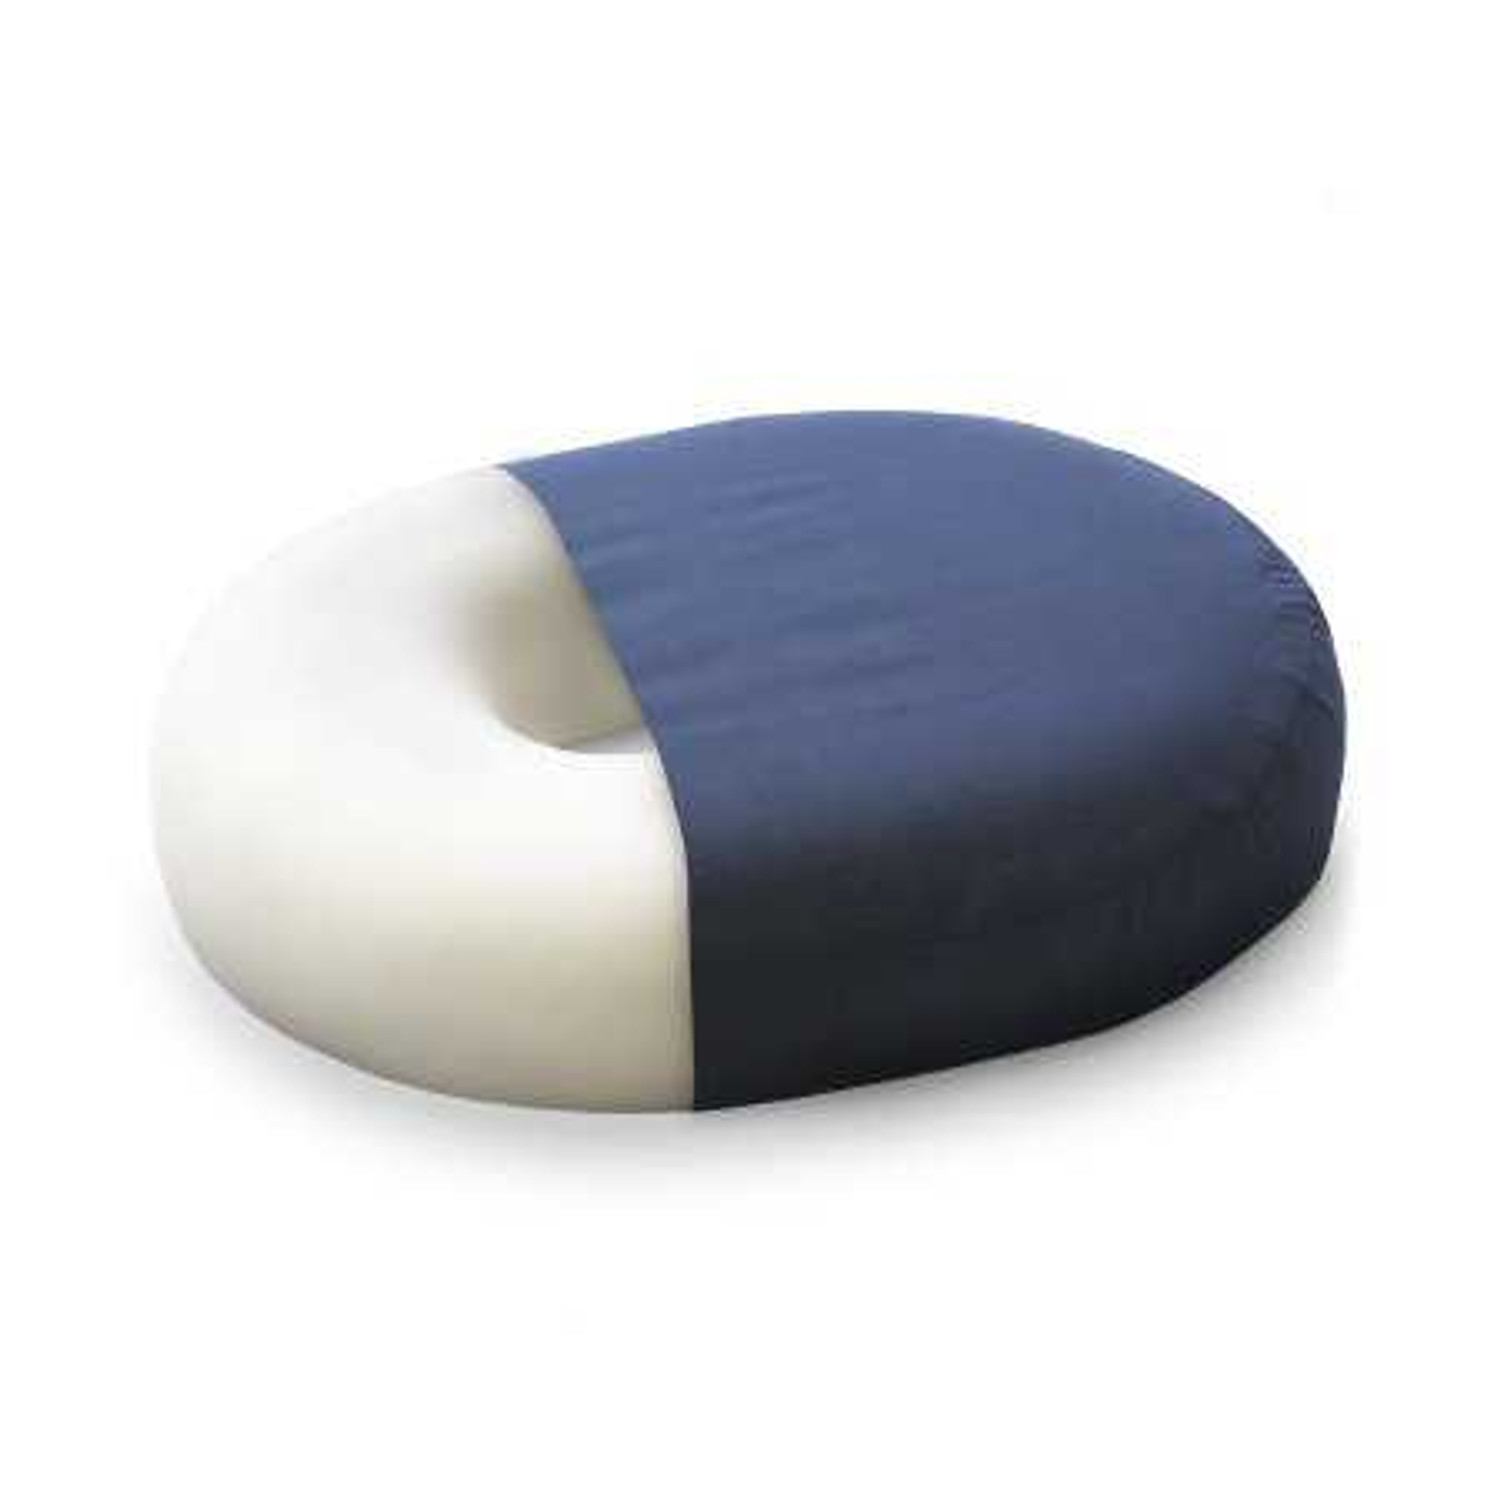 3/16 White Cushion Foam